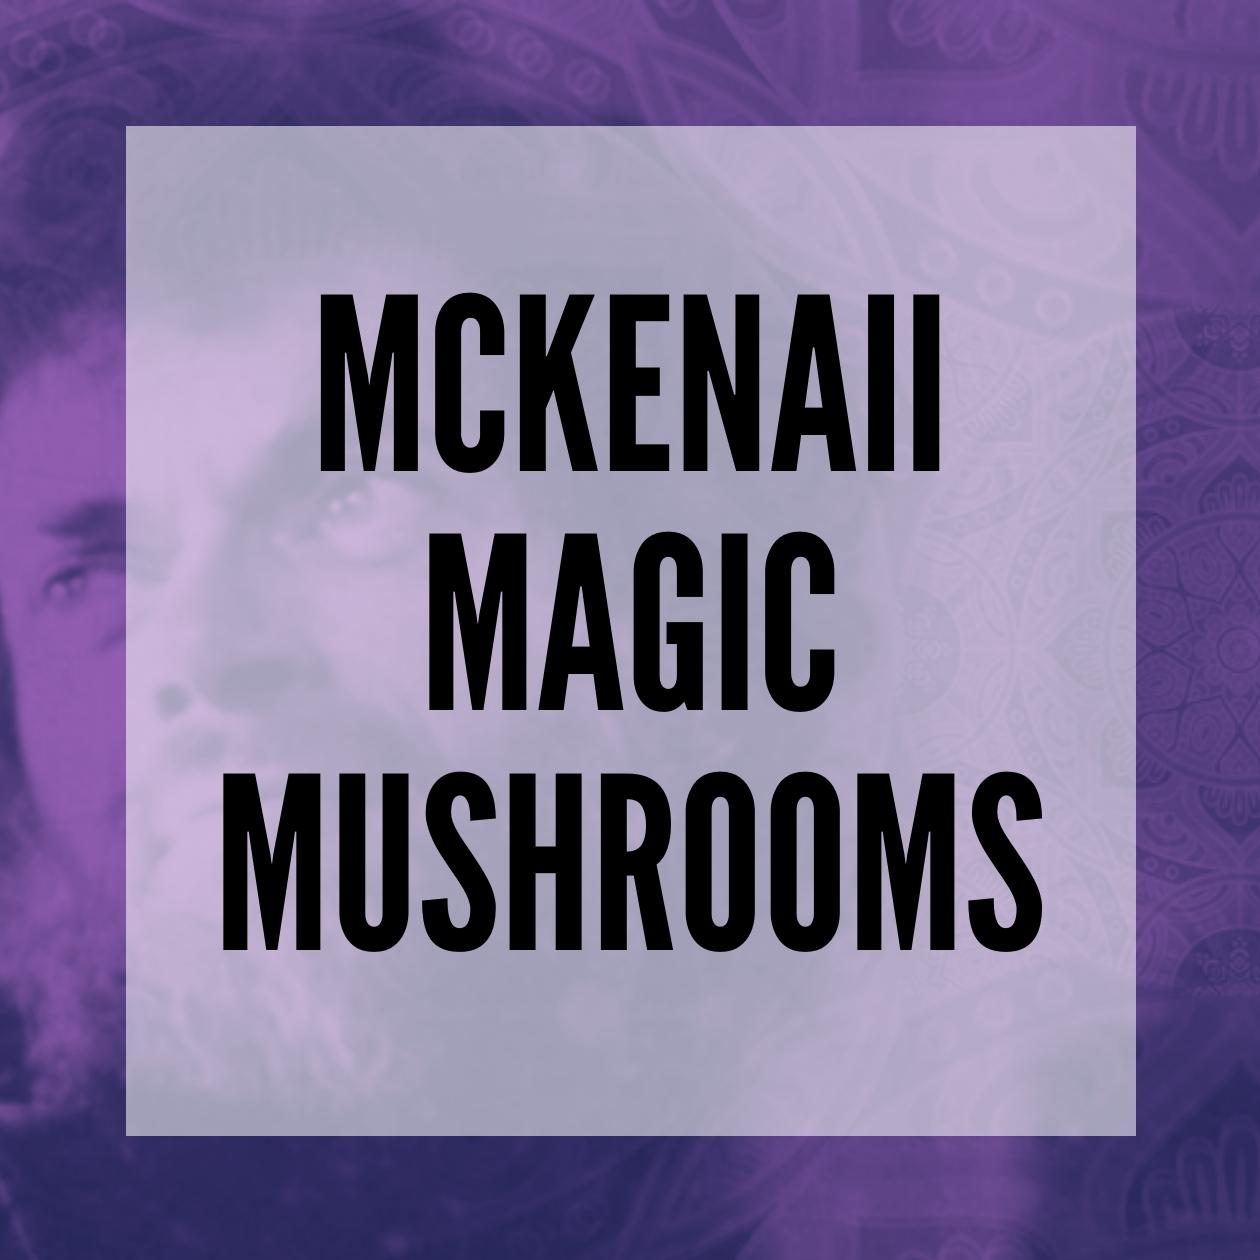 McKennaii magic mushrooms